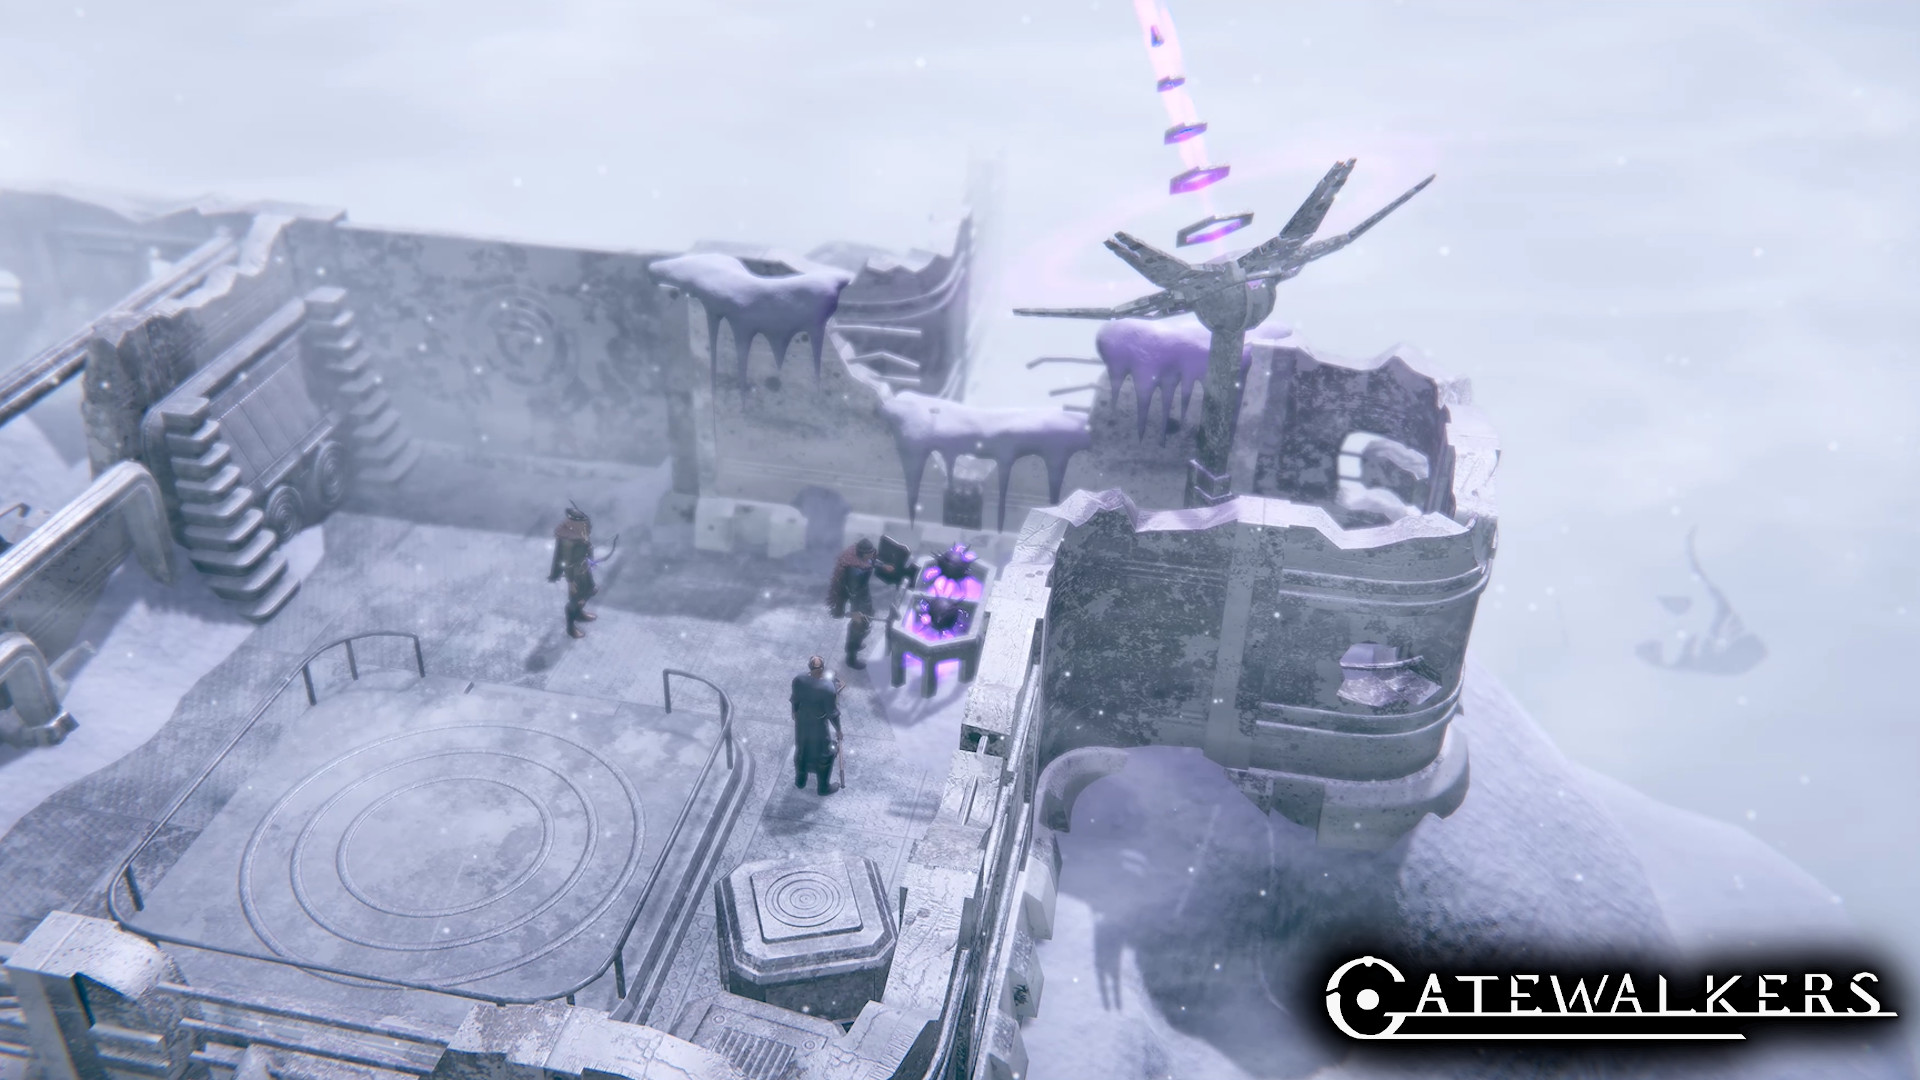 Gatewalkers (Alpha) screenshot